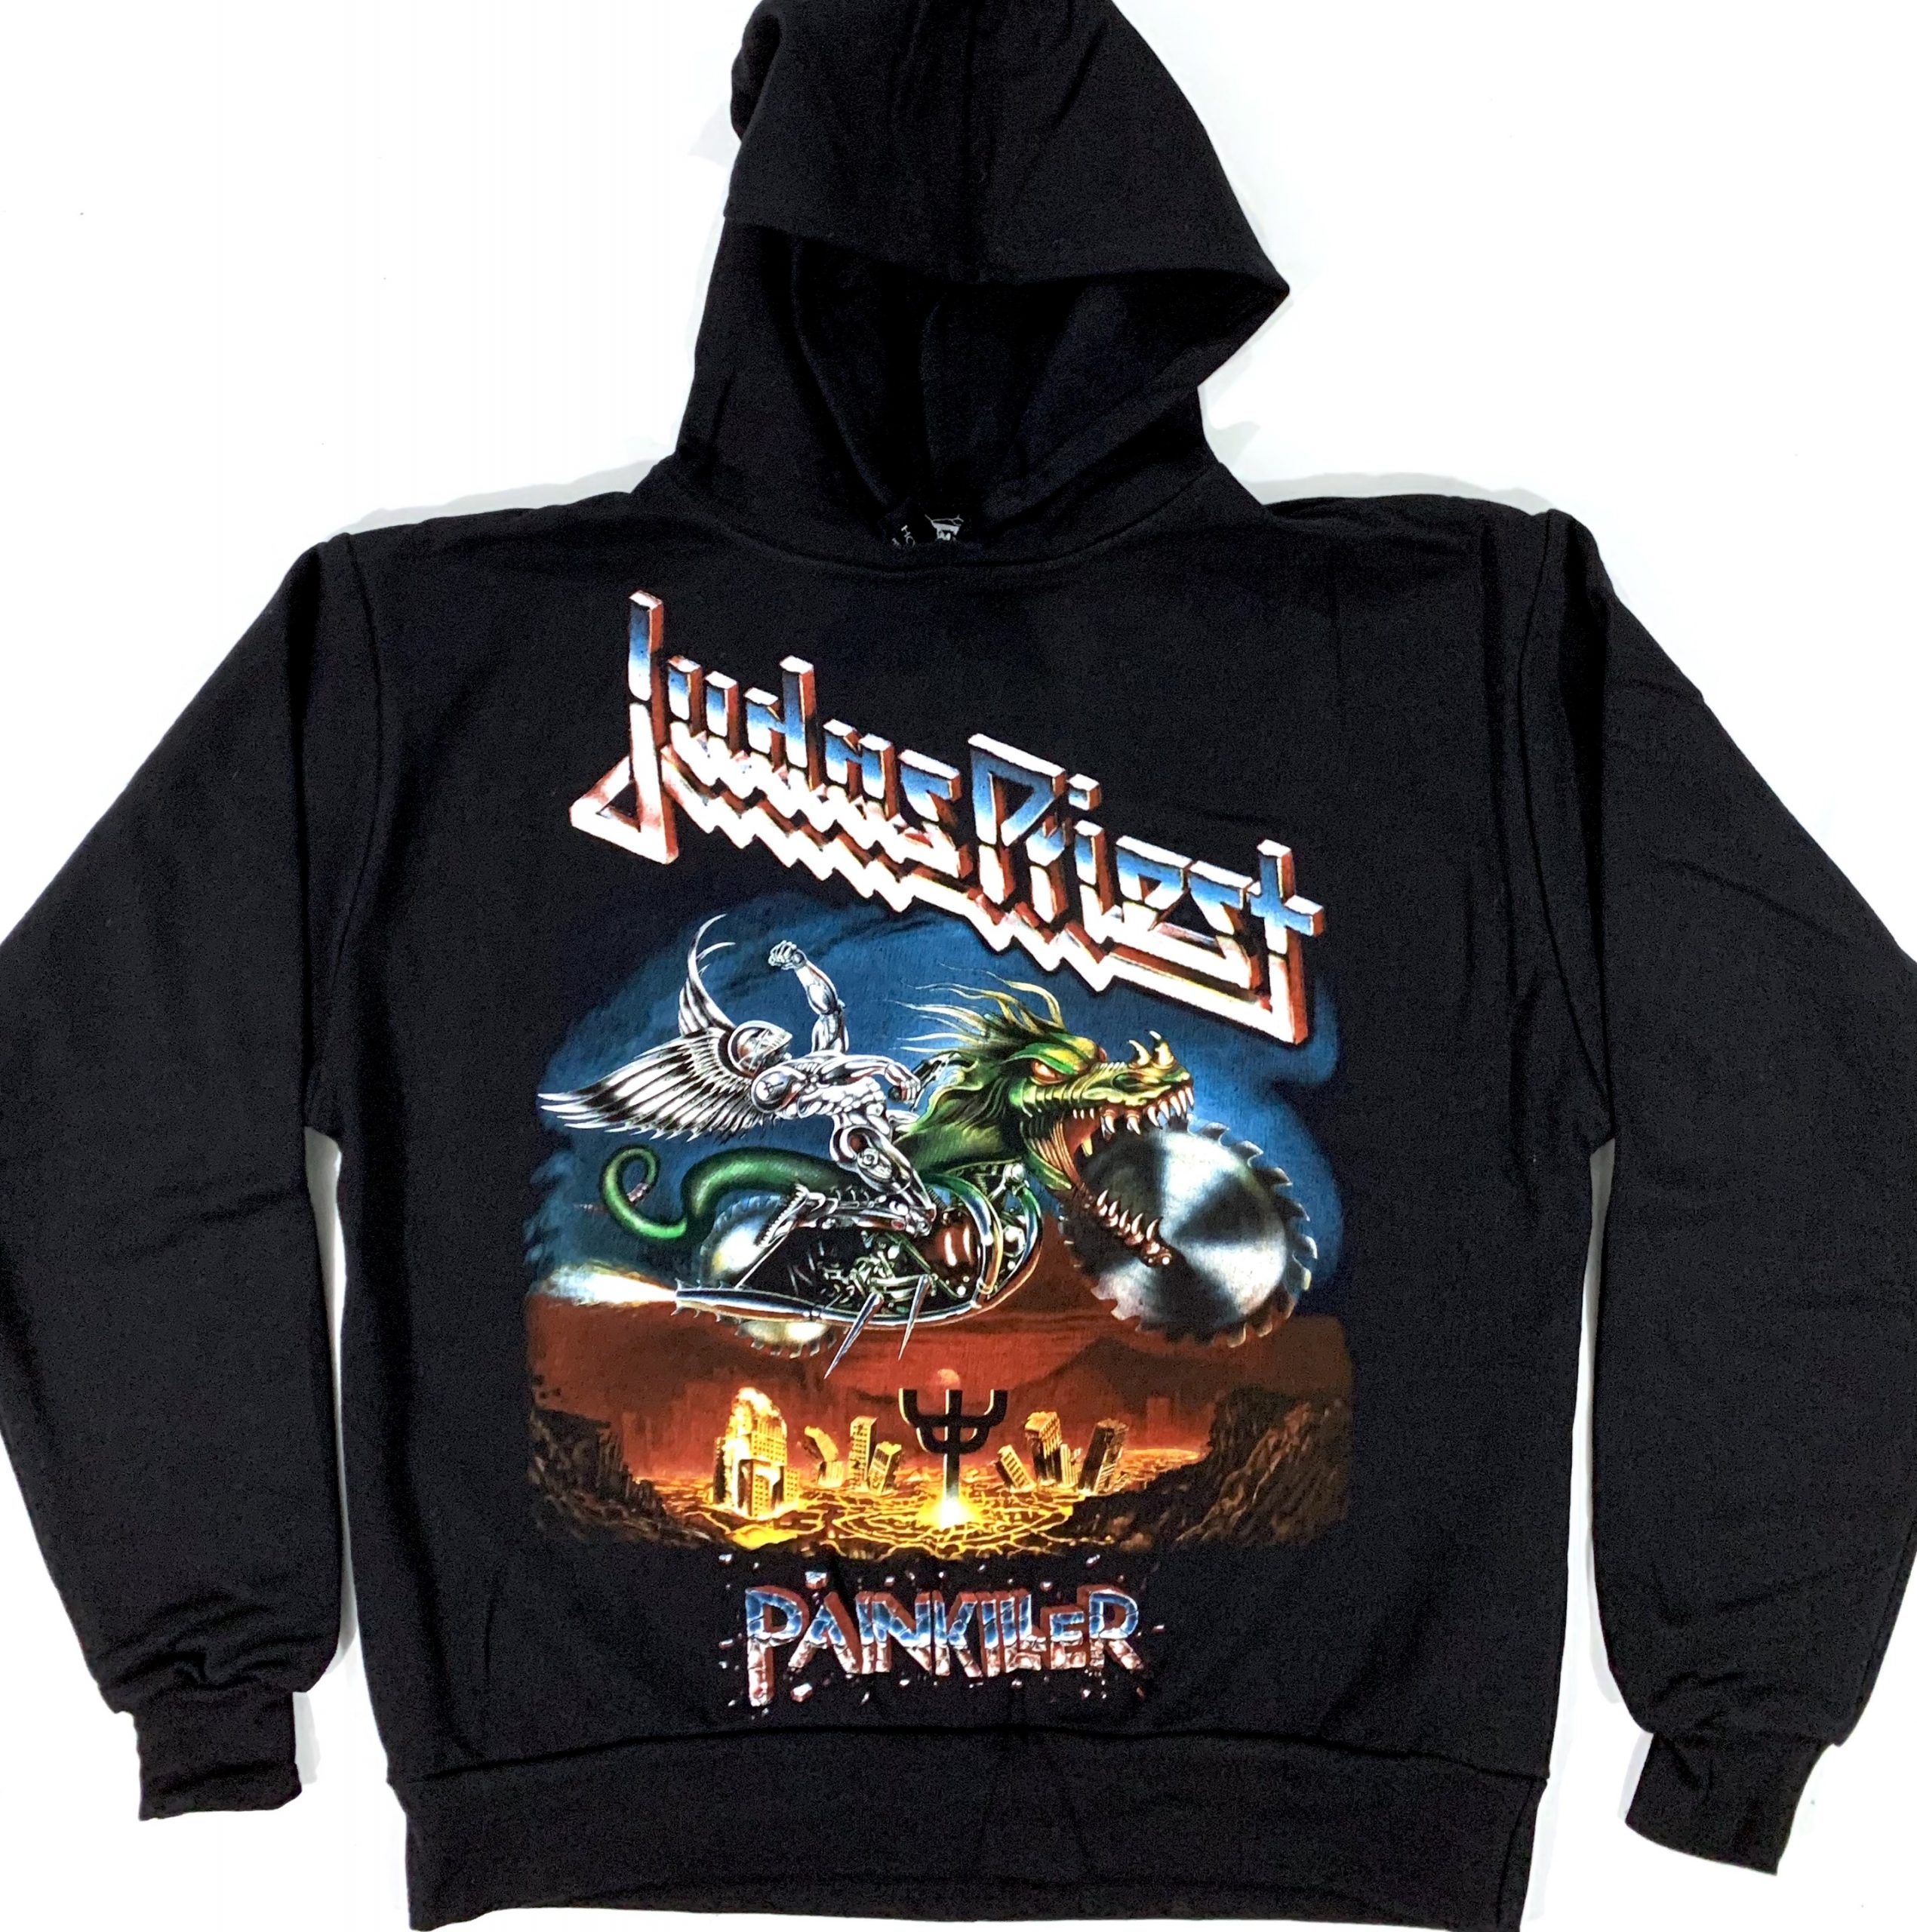 Judas Priest - PainKiller (Duks) - Duksevi